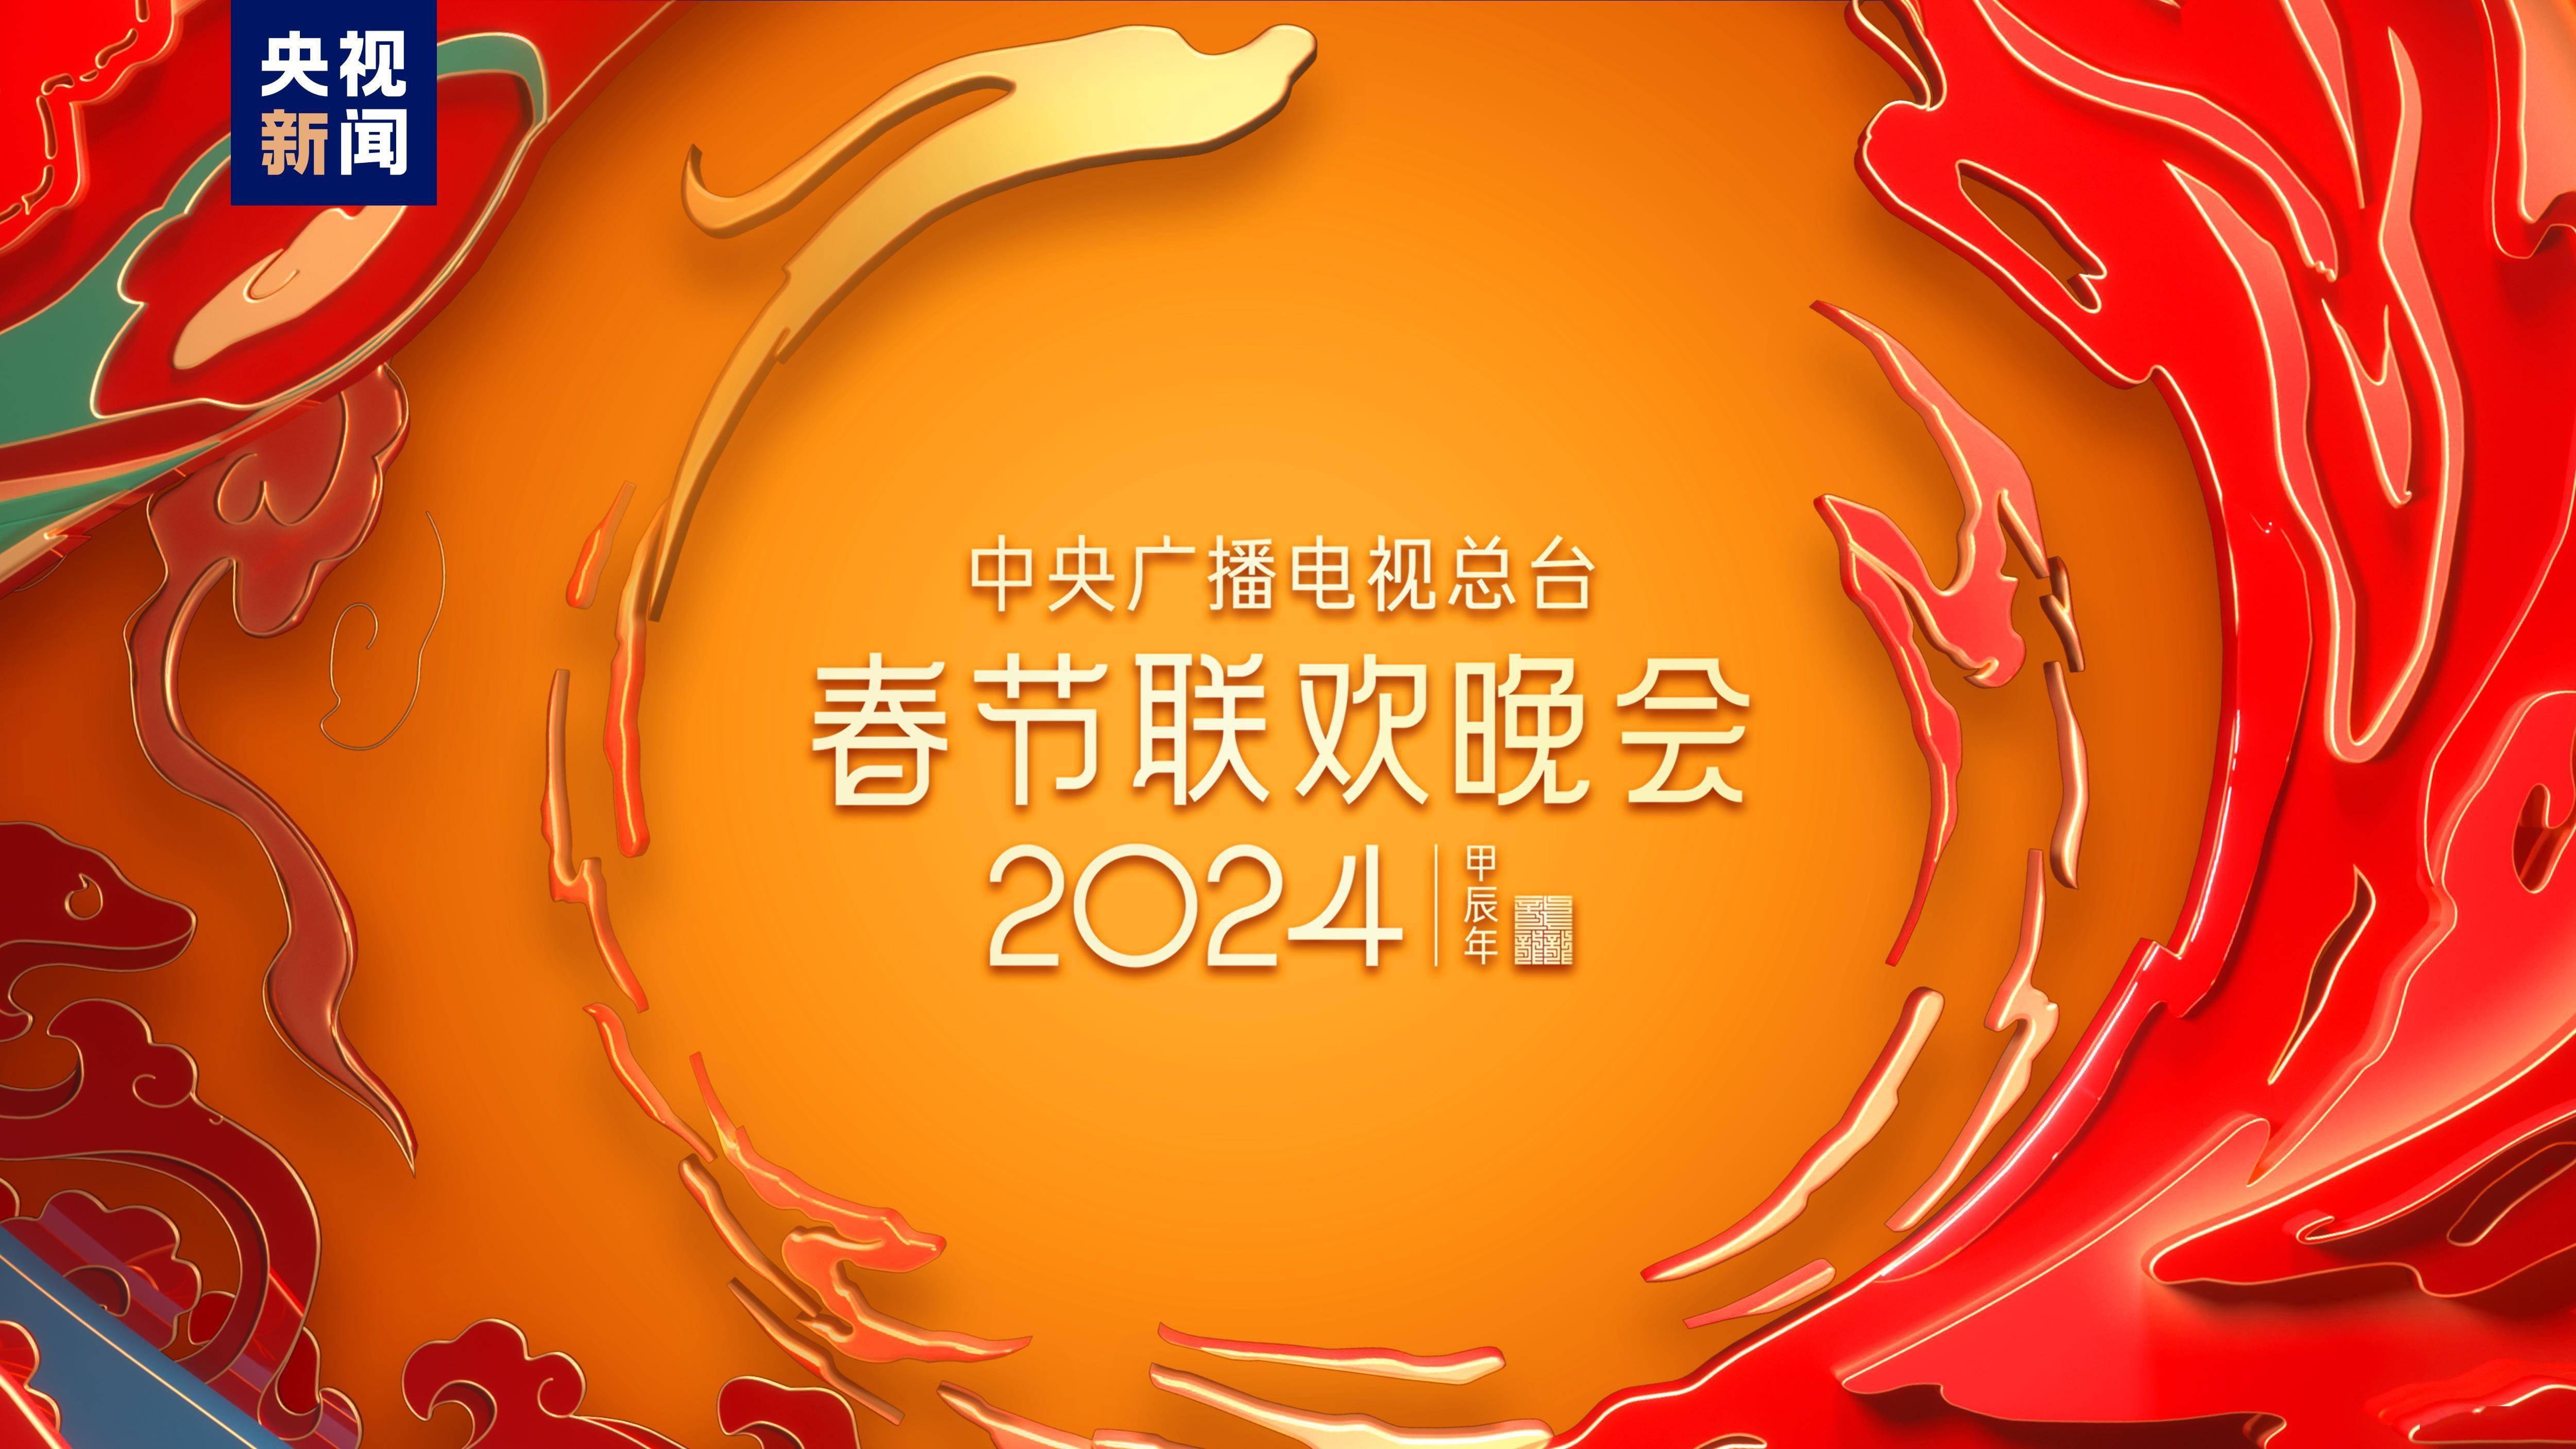 2022年春晚宣传海报图片